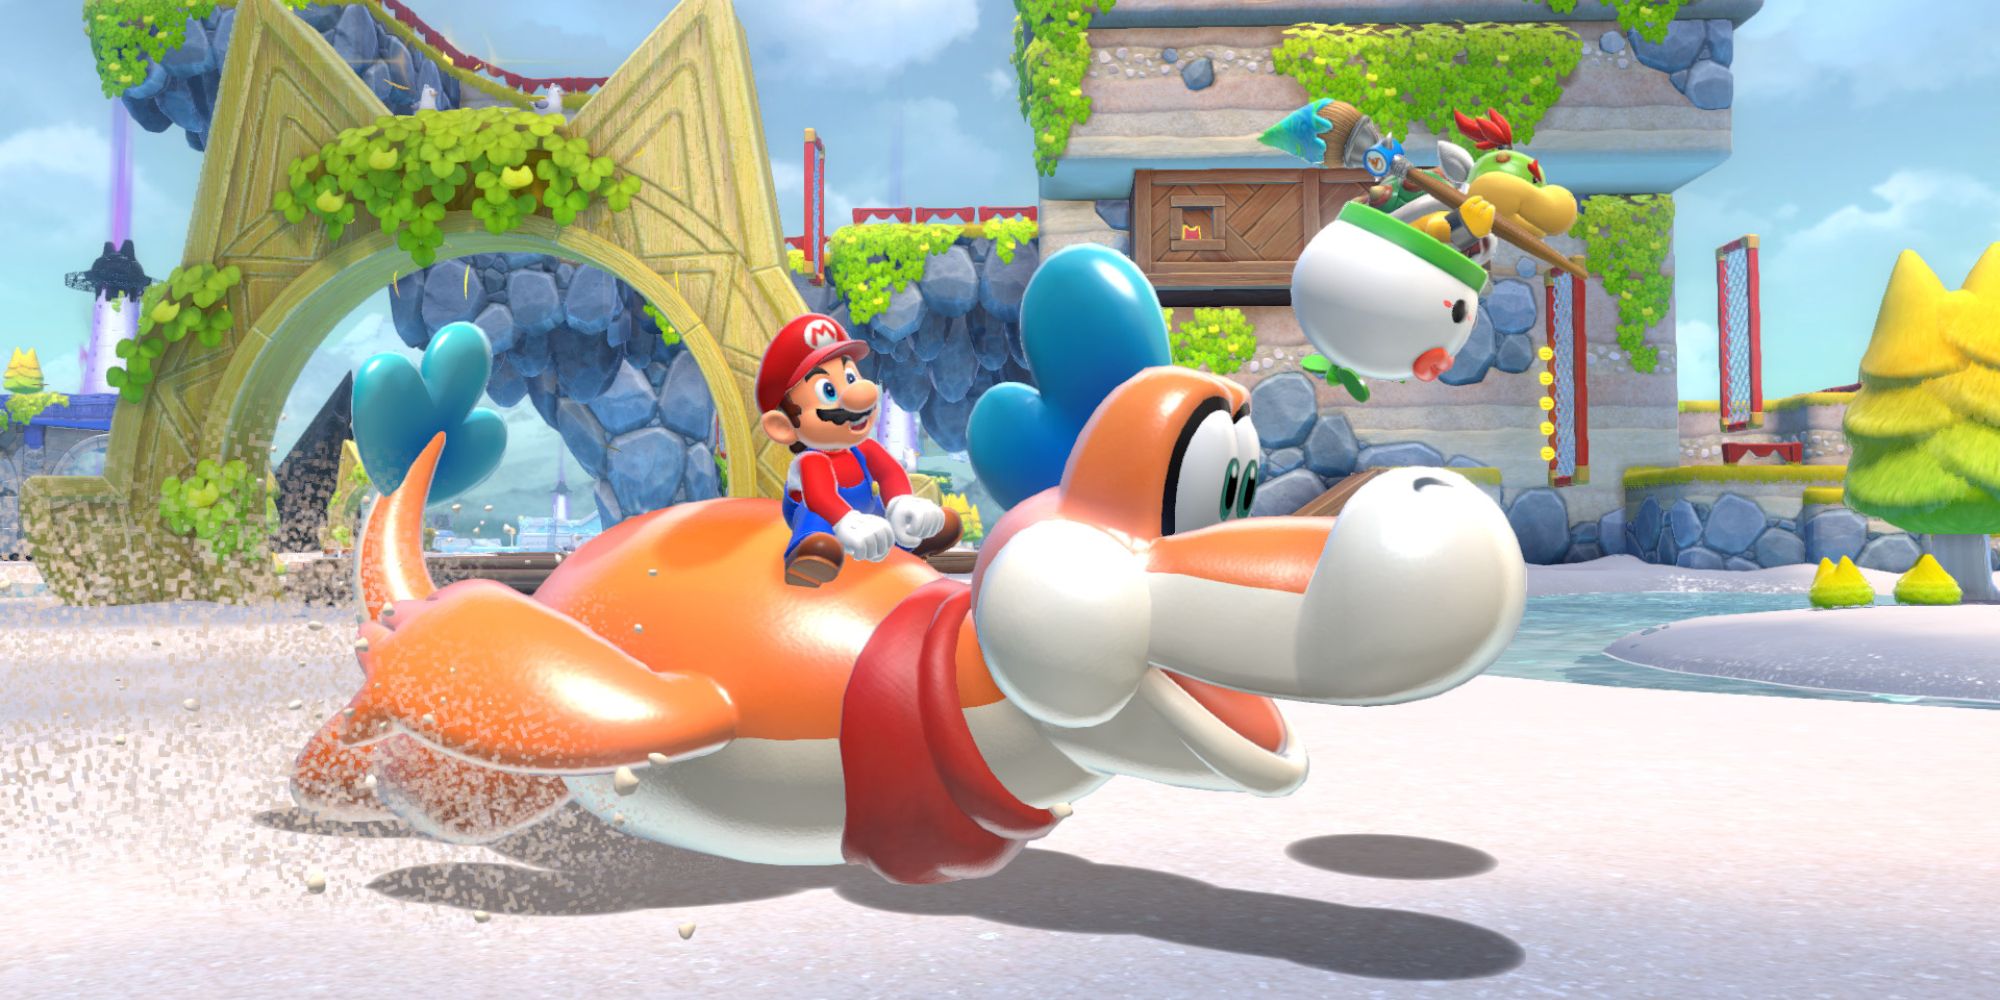 Mario riding Plessie on land